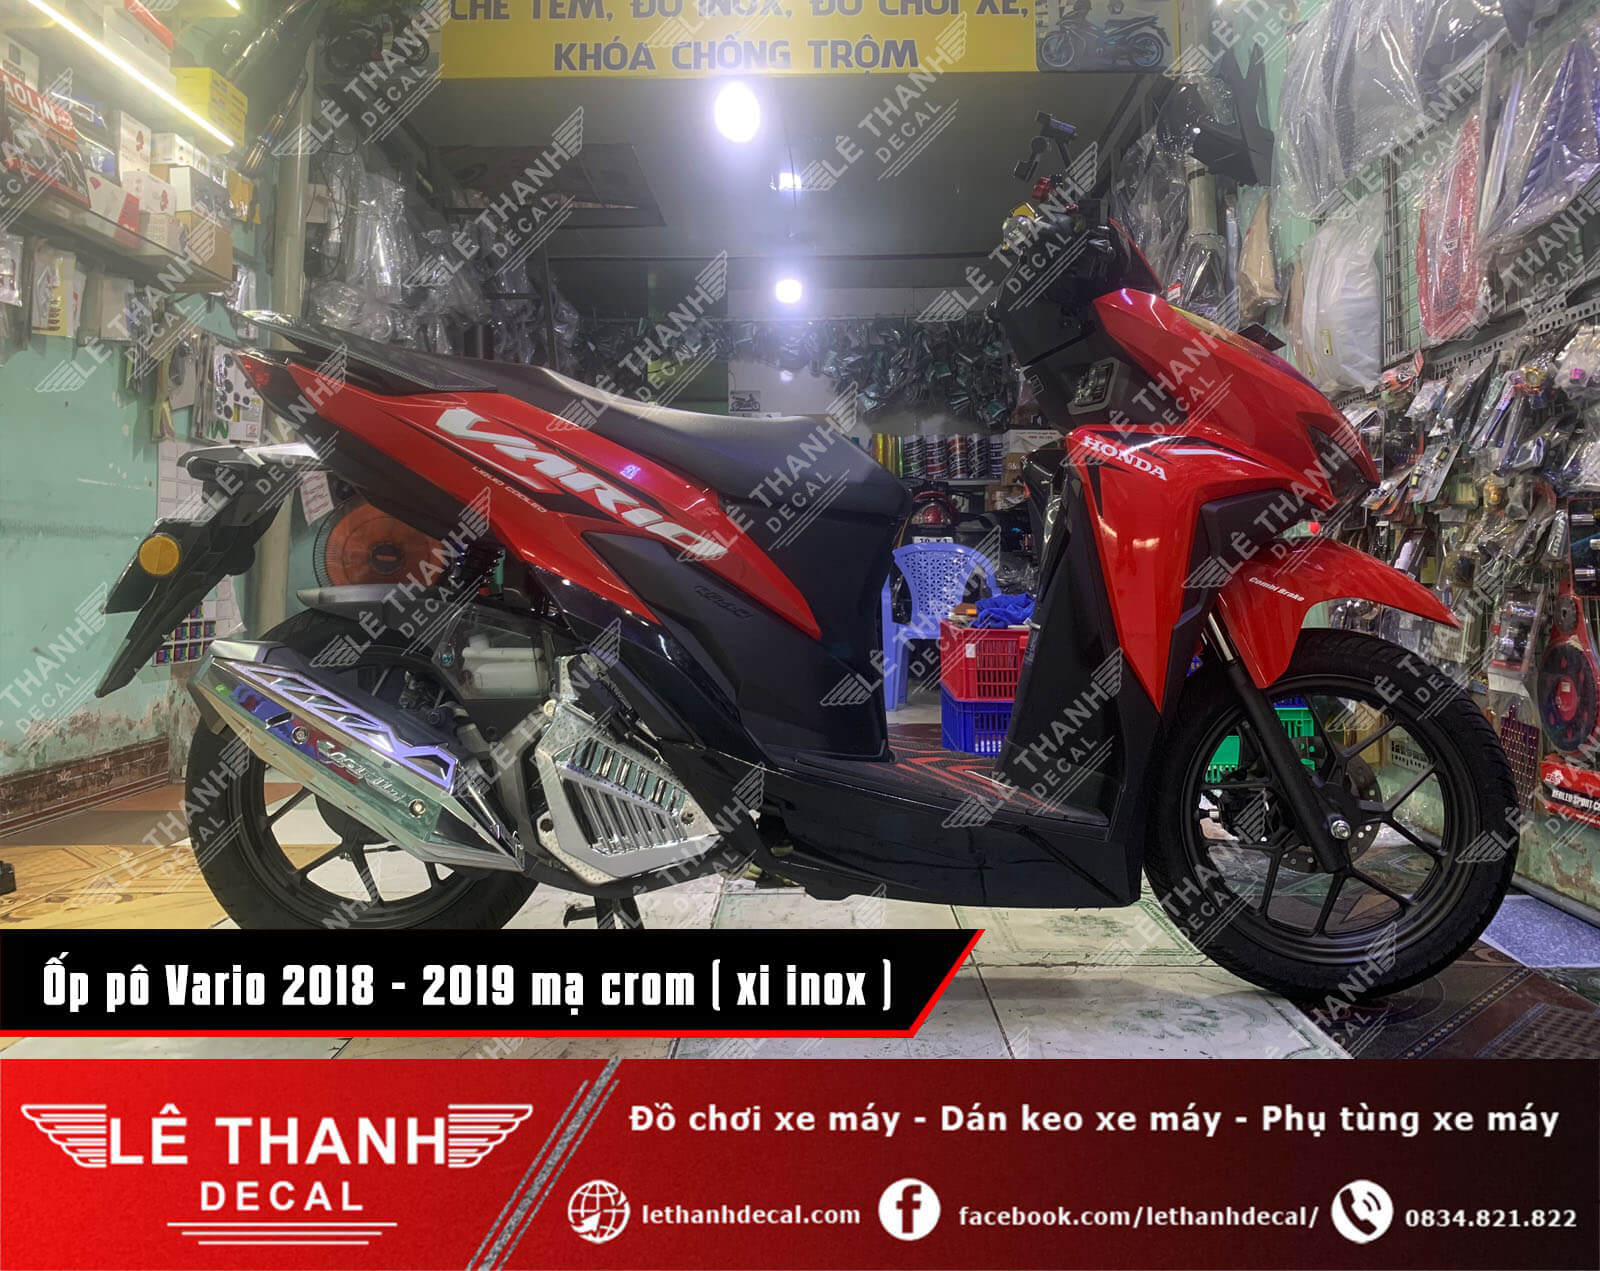 Tổng hợp, báo giá đồ chơi xe máy Vario 2018 - 2019 xi mạ crom